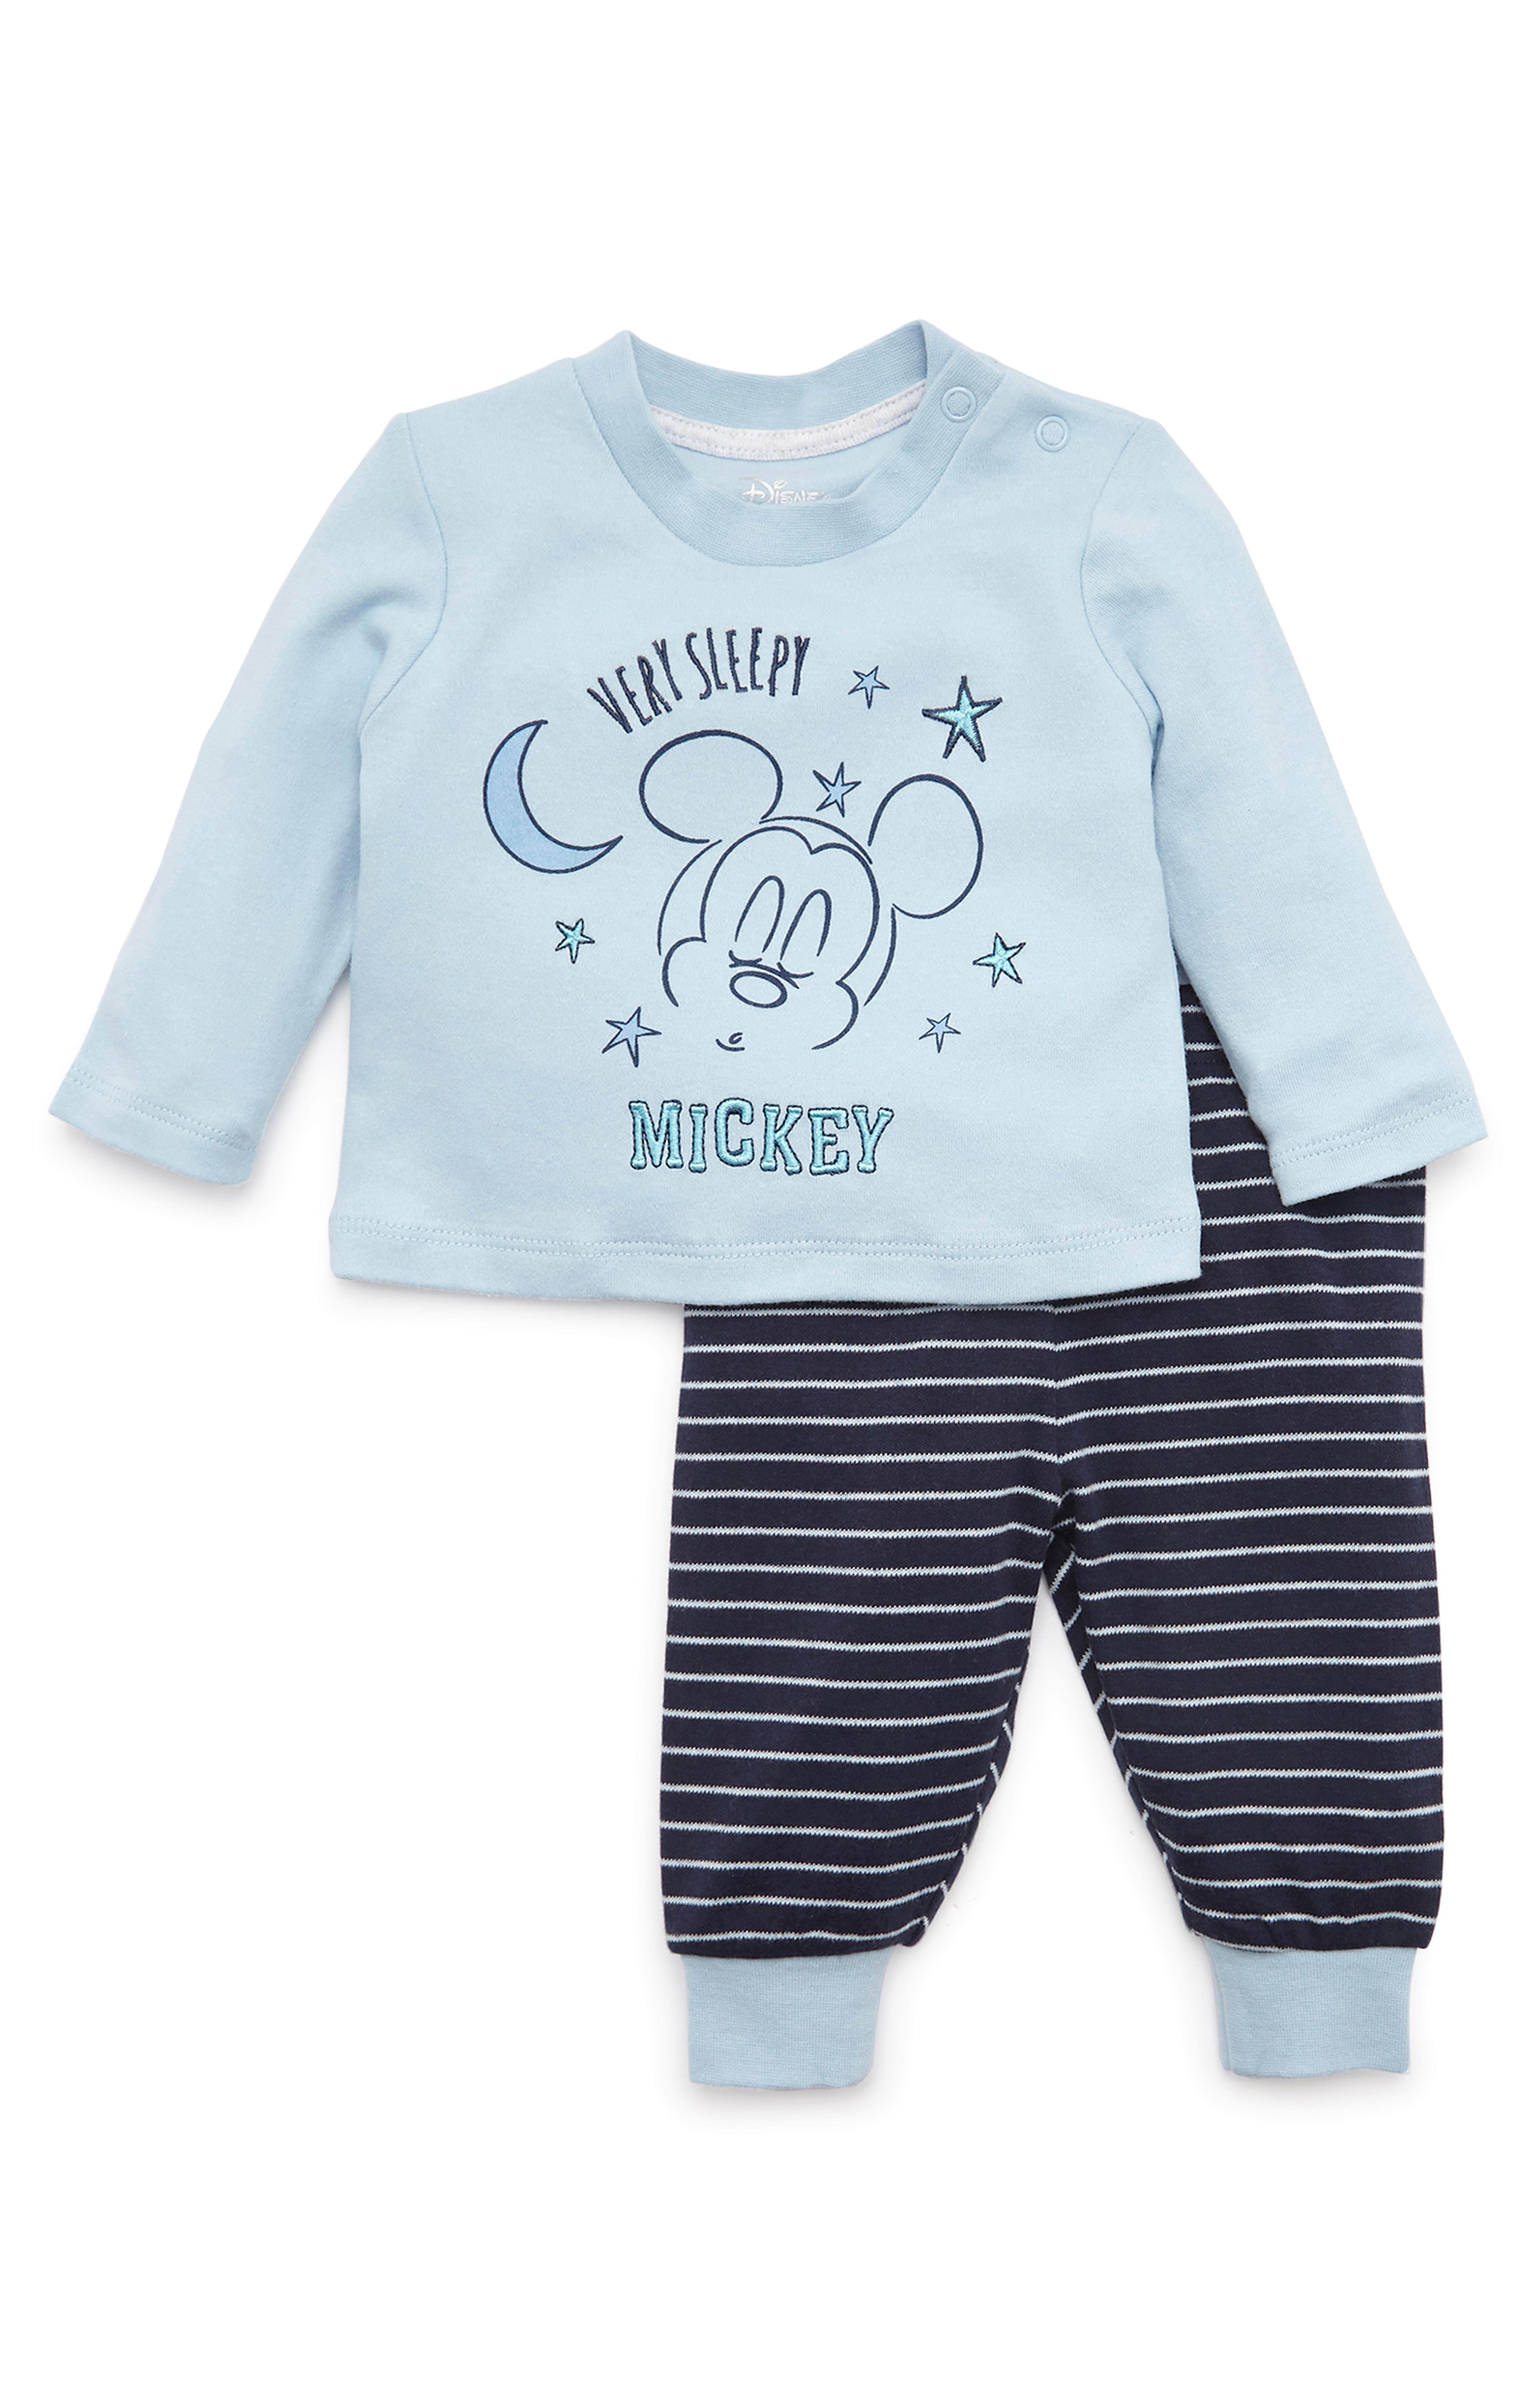 Disney Mickey Mouse Babies Boys Star Pyjamas Baby Grow